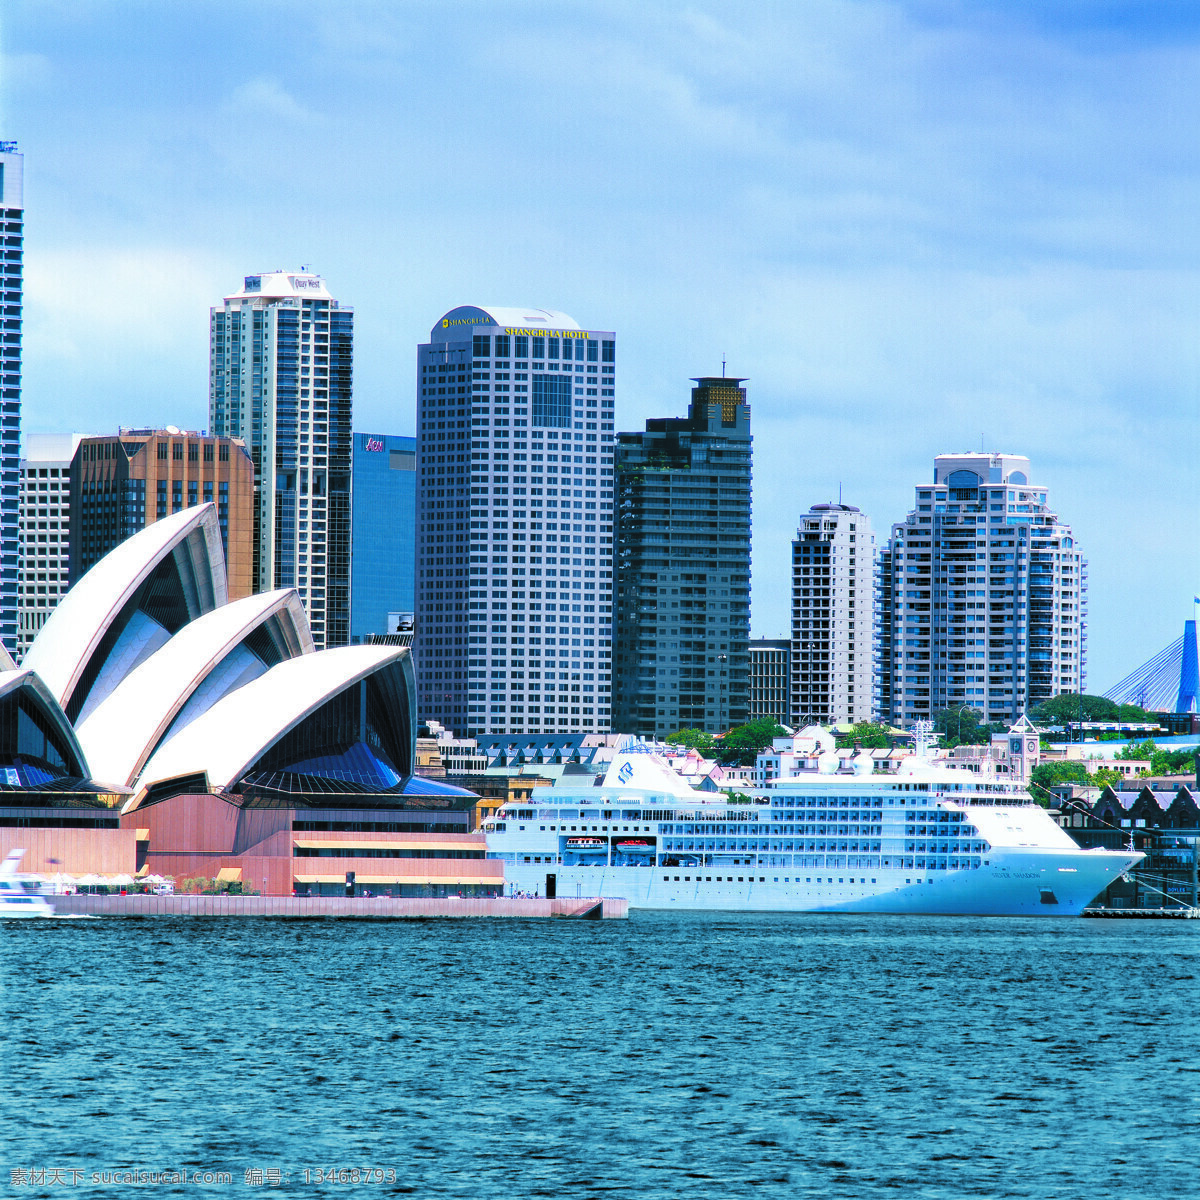 澳大利亚 大海 海景 建筑设计 建筑摄影 建筑园林 悉尼 悉尼歌剧院 建筑外观拍摄 油轮 旅游船 首都 海外风情 风景 生活 旅游餐饮